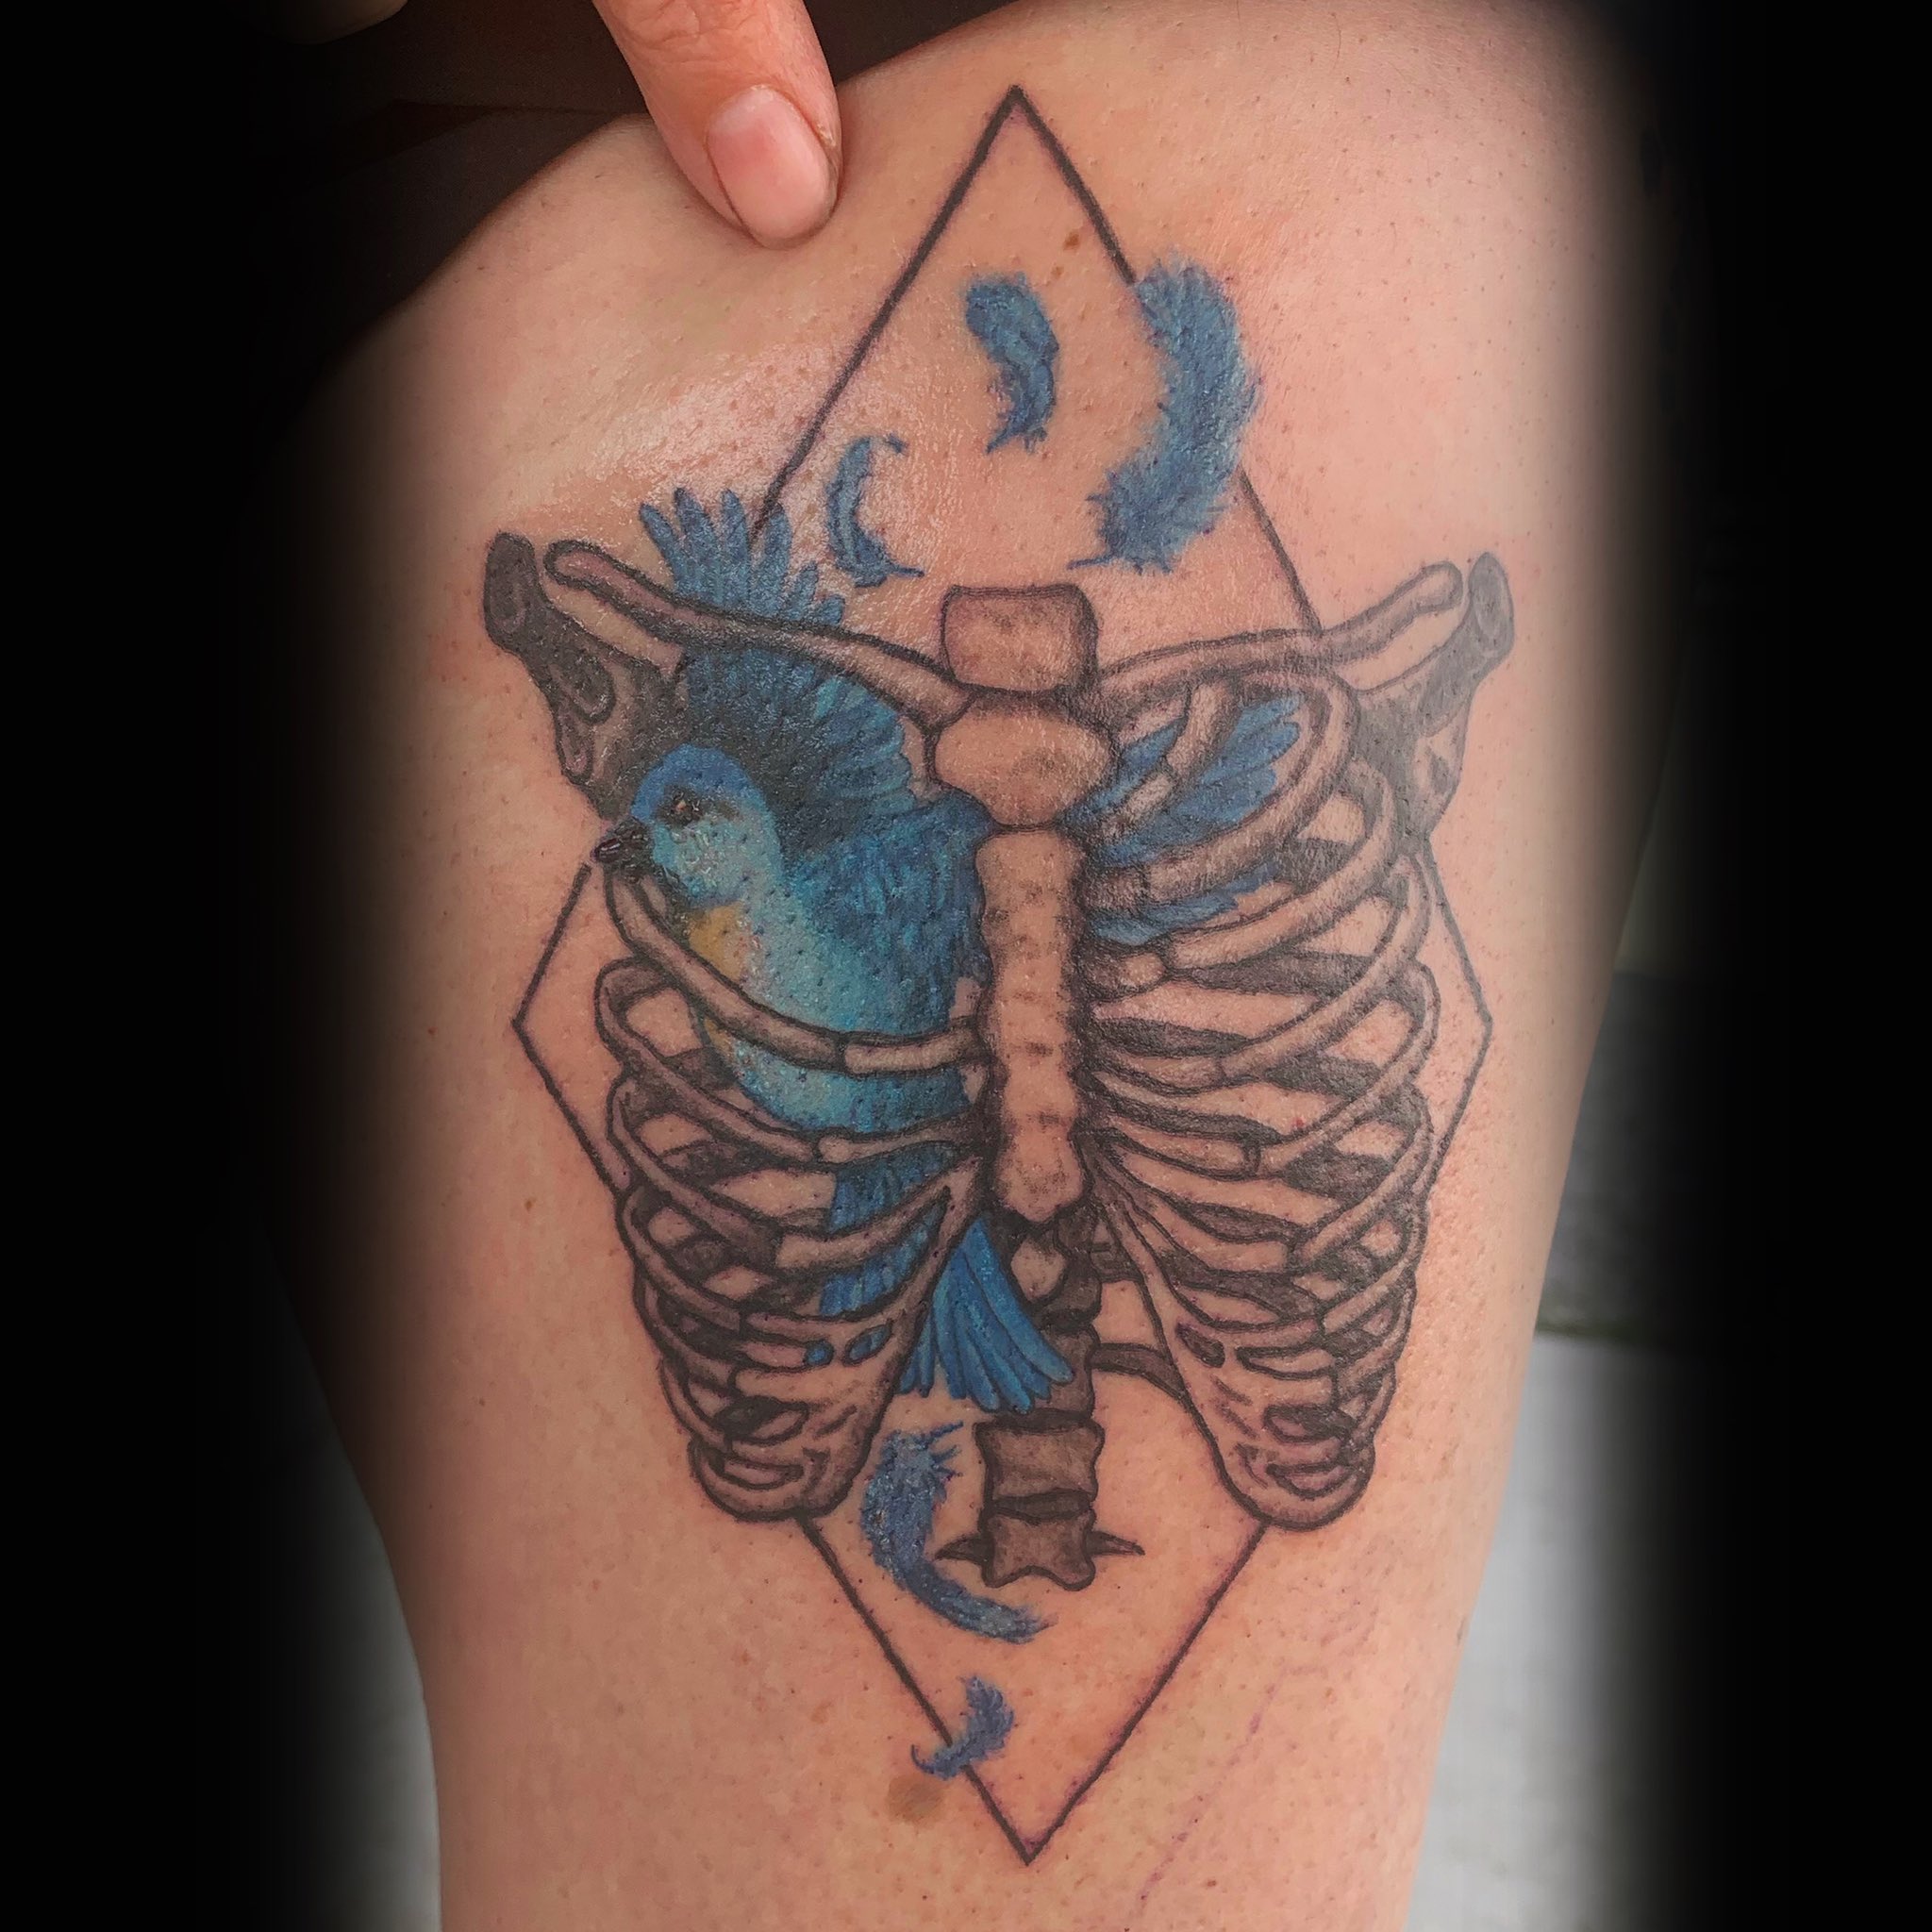 Eastern bluebird done by Jimmy Butcher in Savannah, GA : r/tattoos